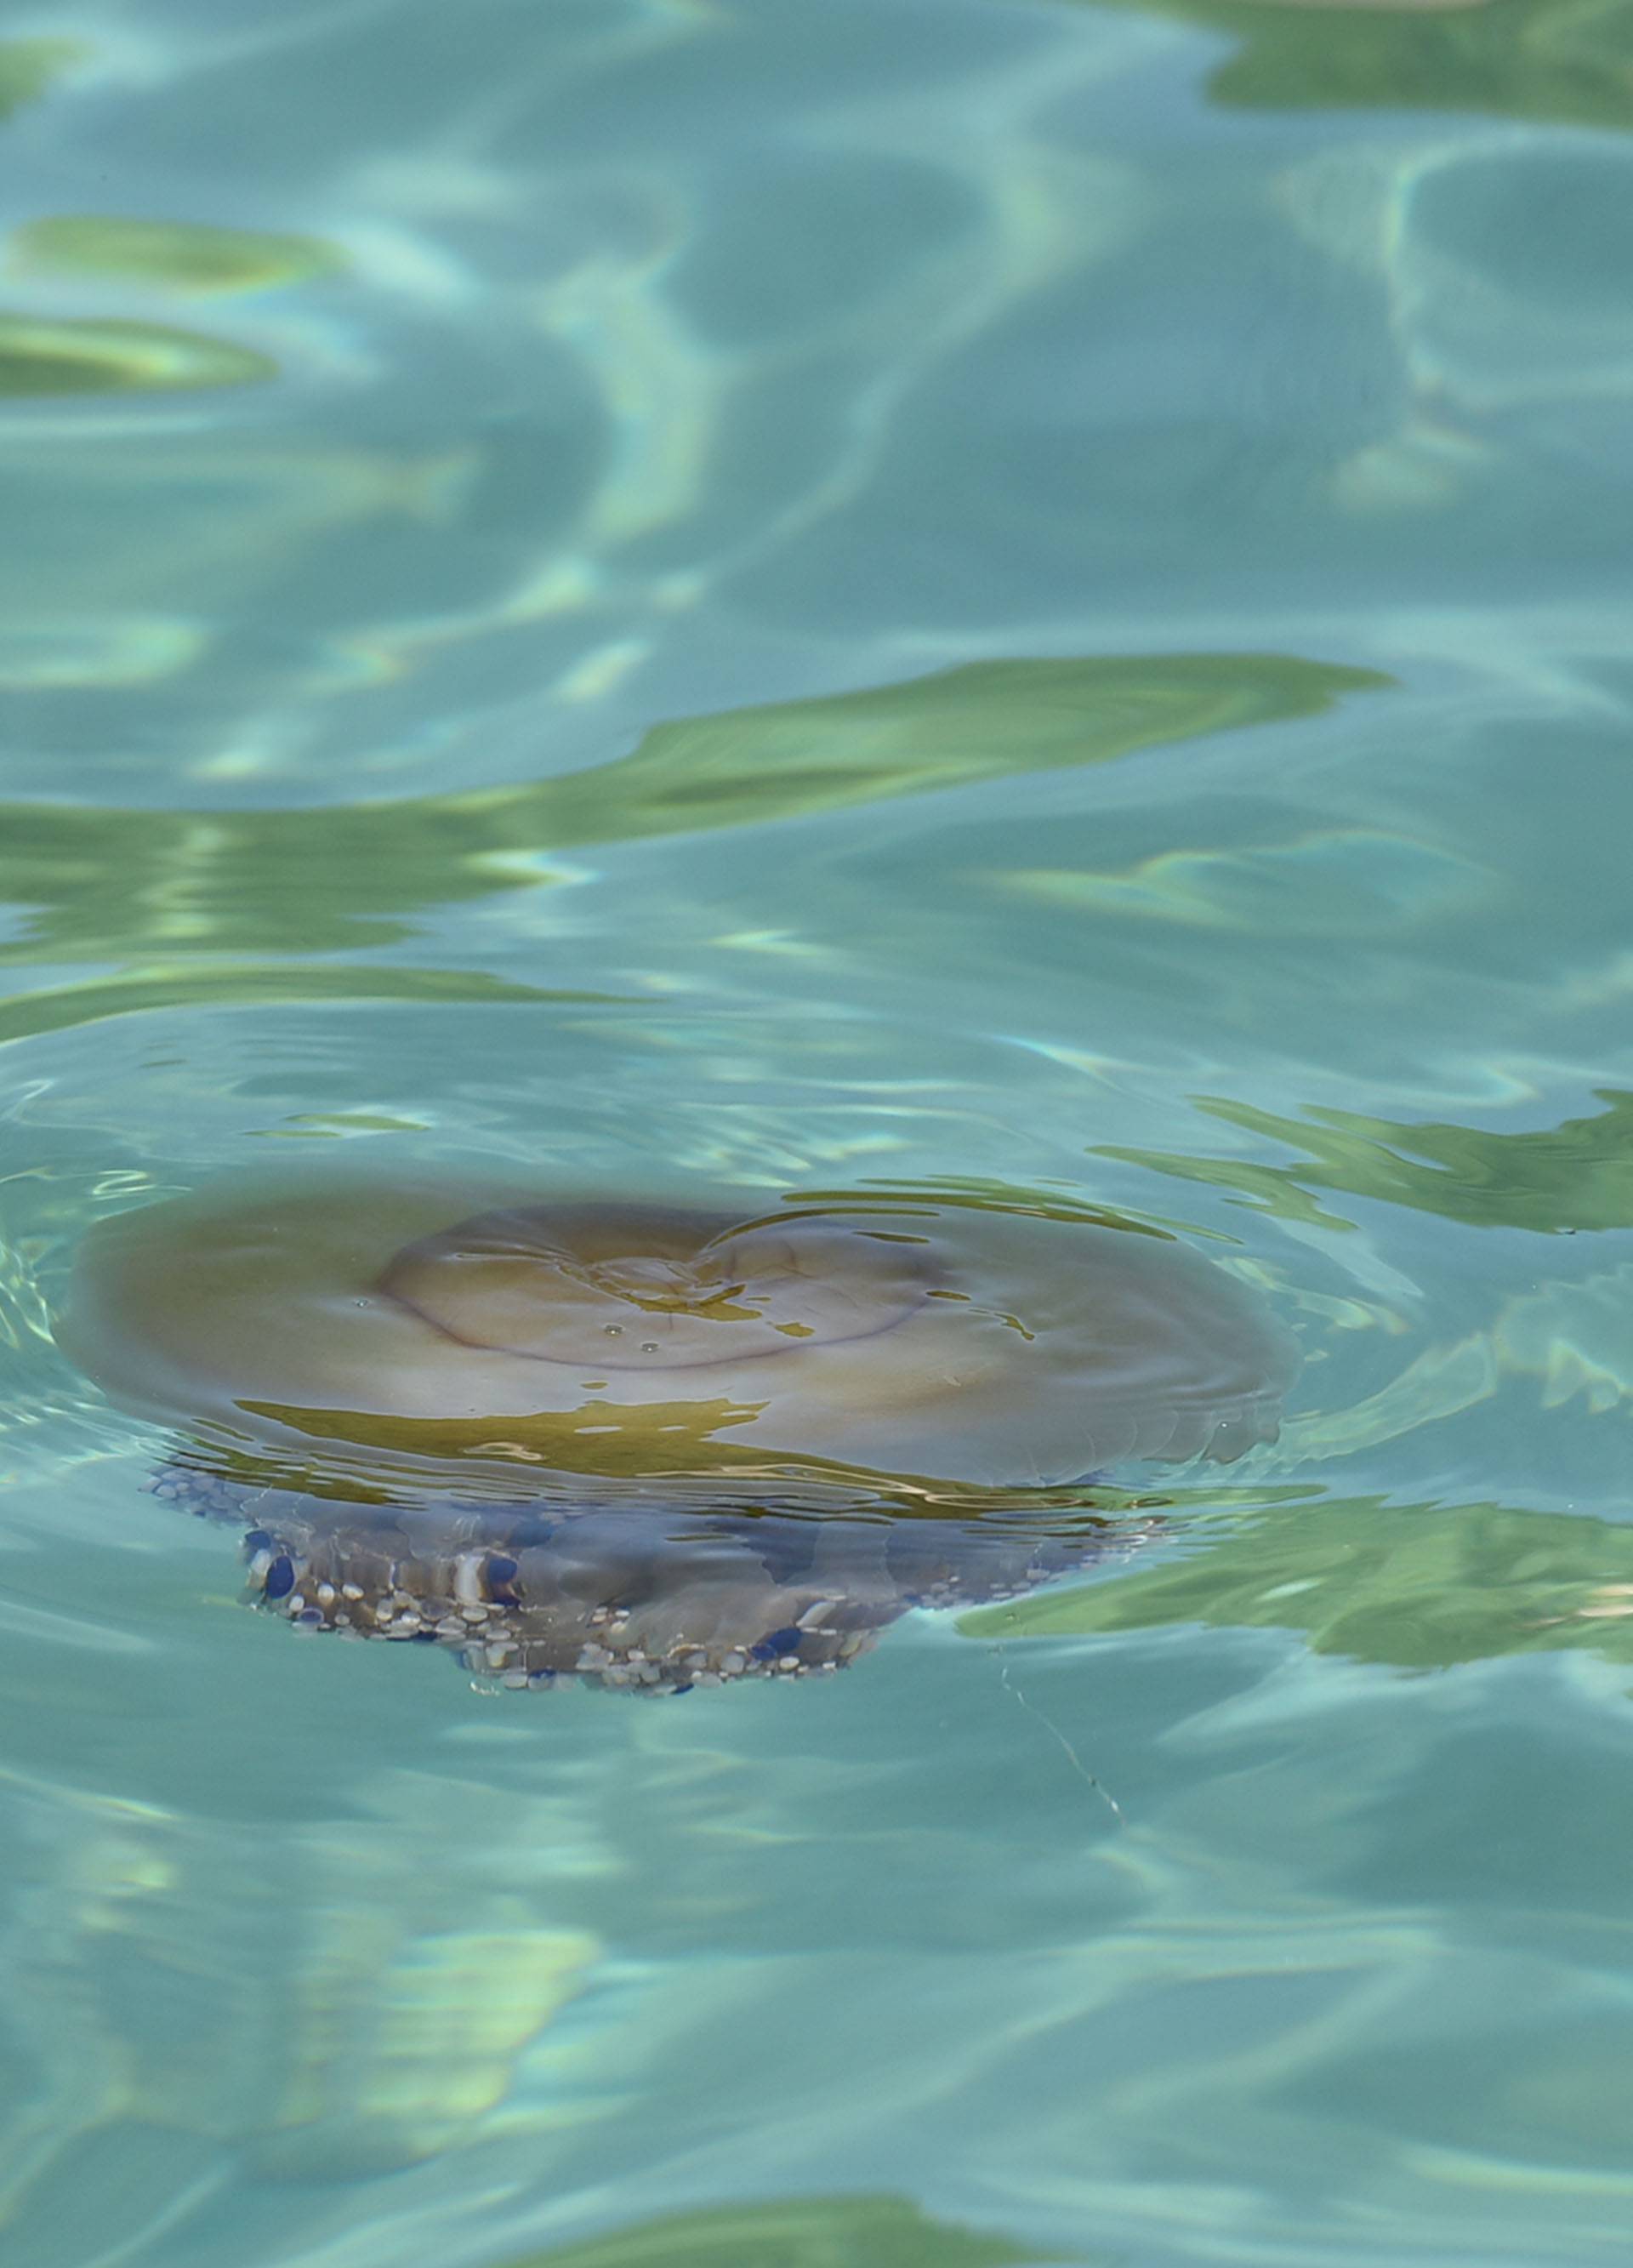 Invazija na Istru:  Nakon kitova, kupače su prestrašile meduze